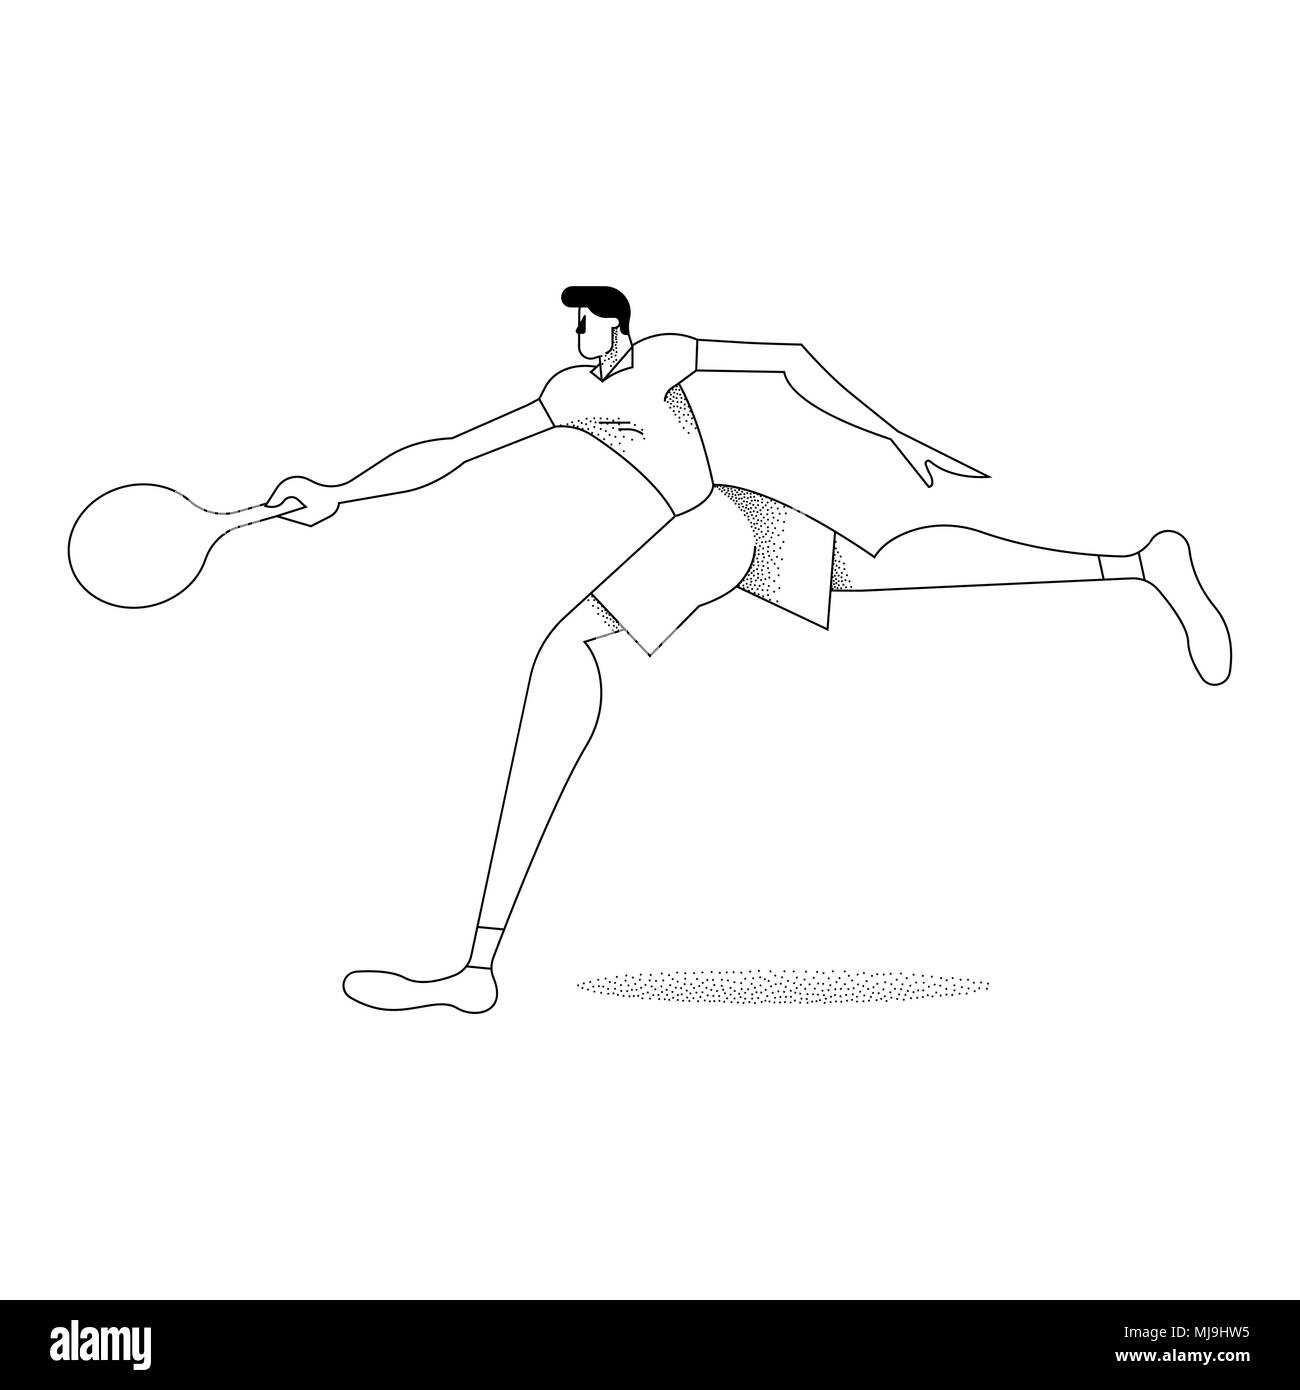 Mann spielt Tennis, modernen schwarzen und weißen Umrisse Stil. Junge mit Schläger in Aktion über isolierte Hintergrund. EPS 10 Vektor. Stock Vektor